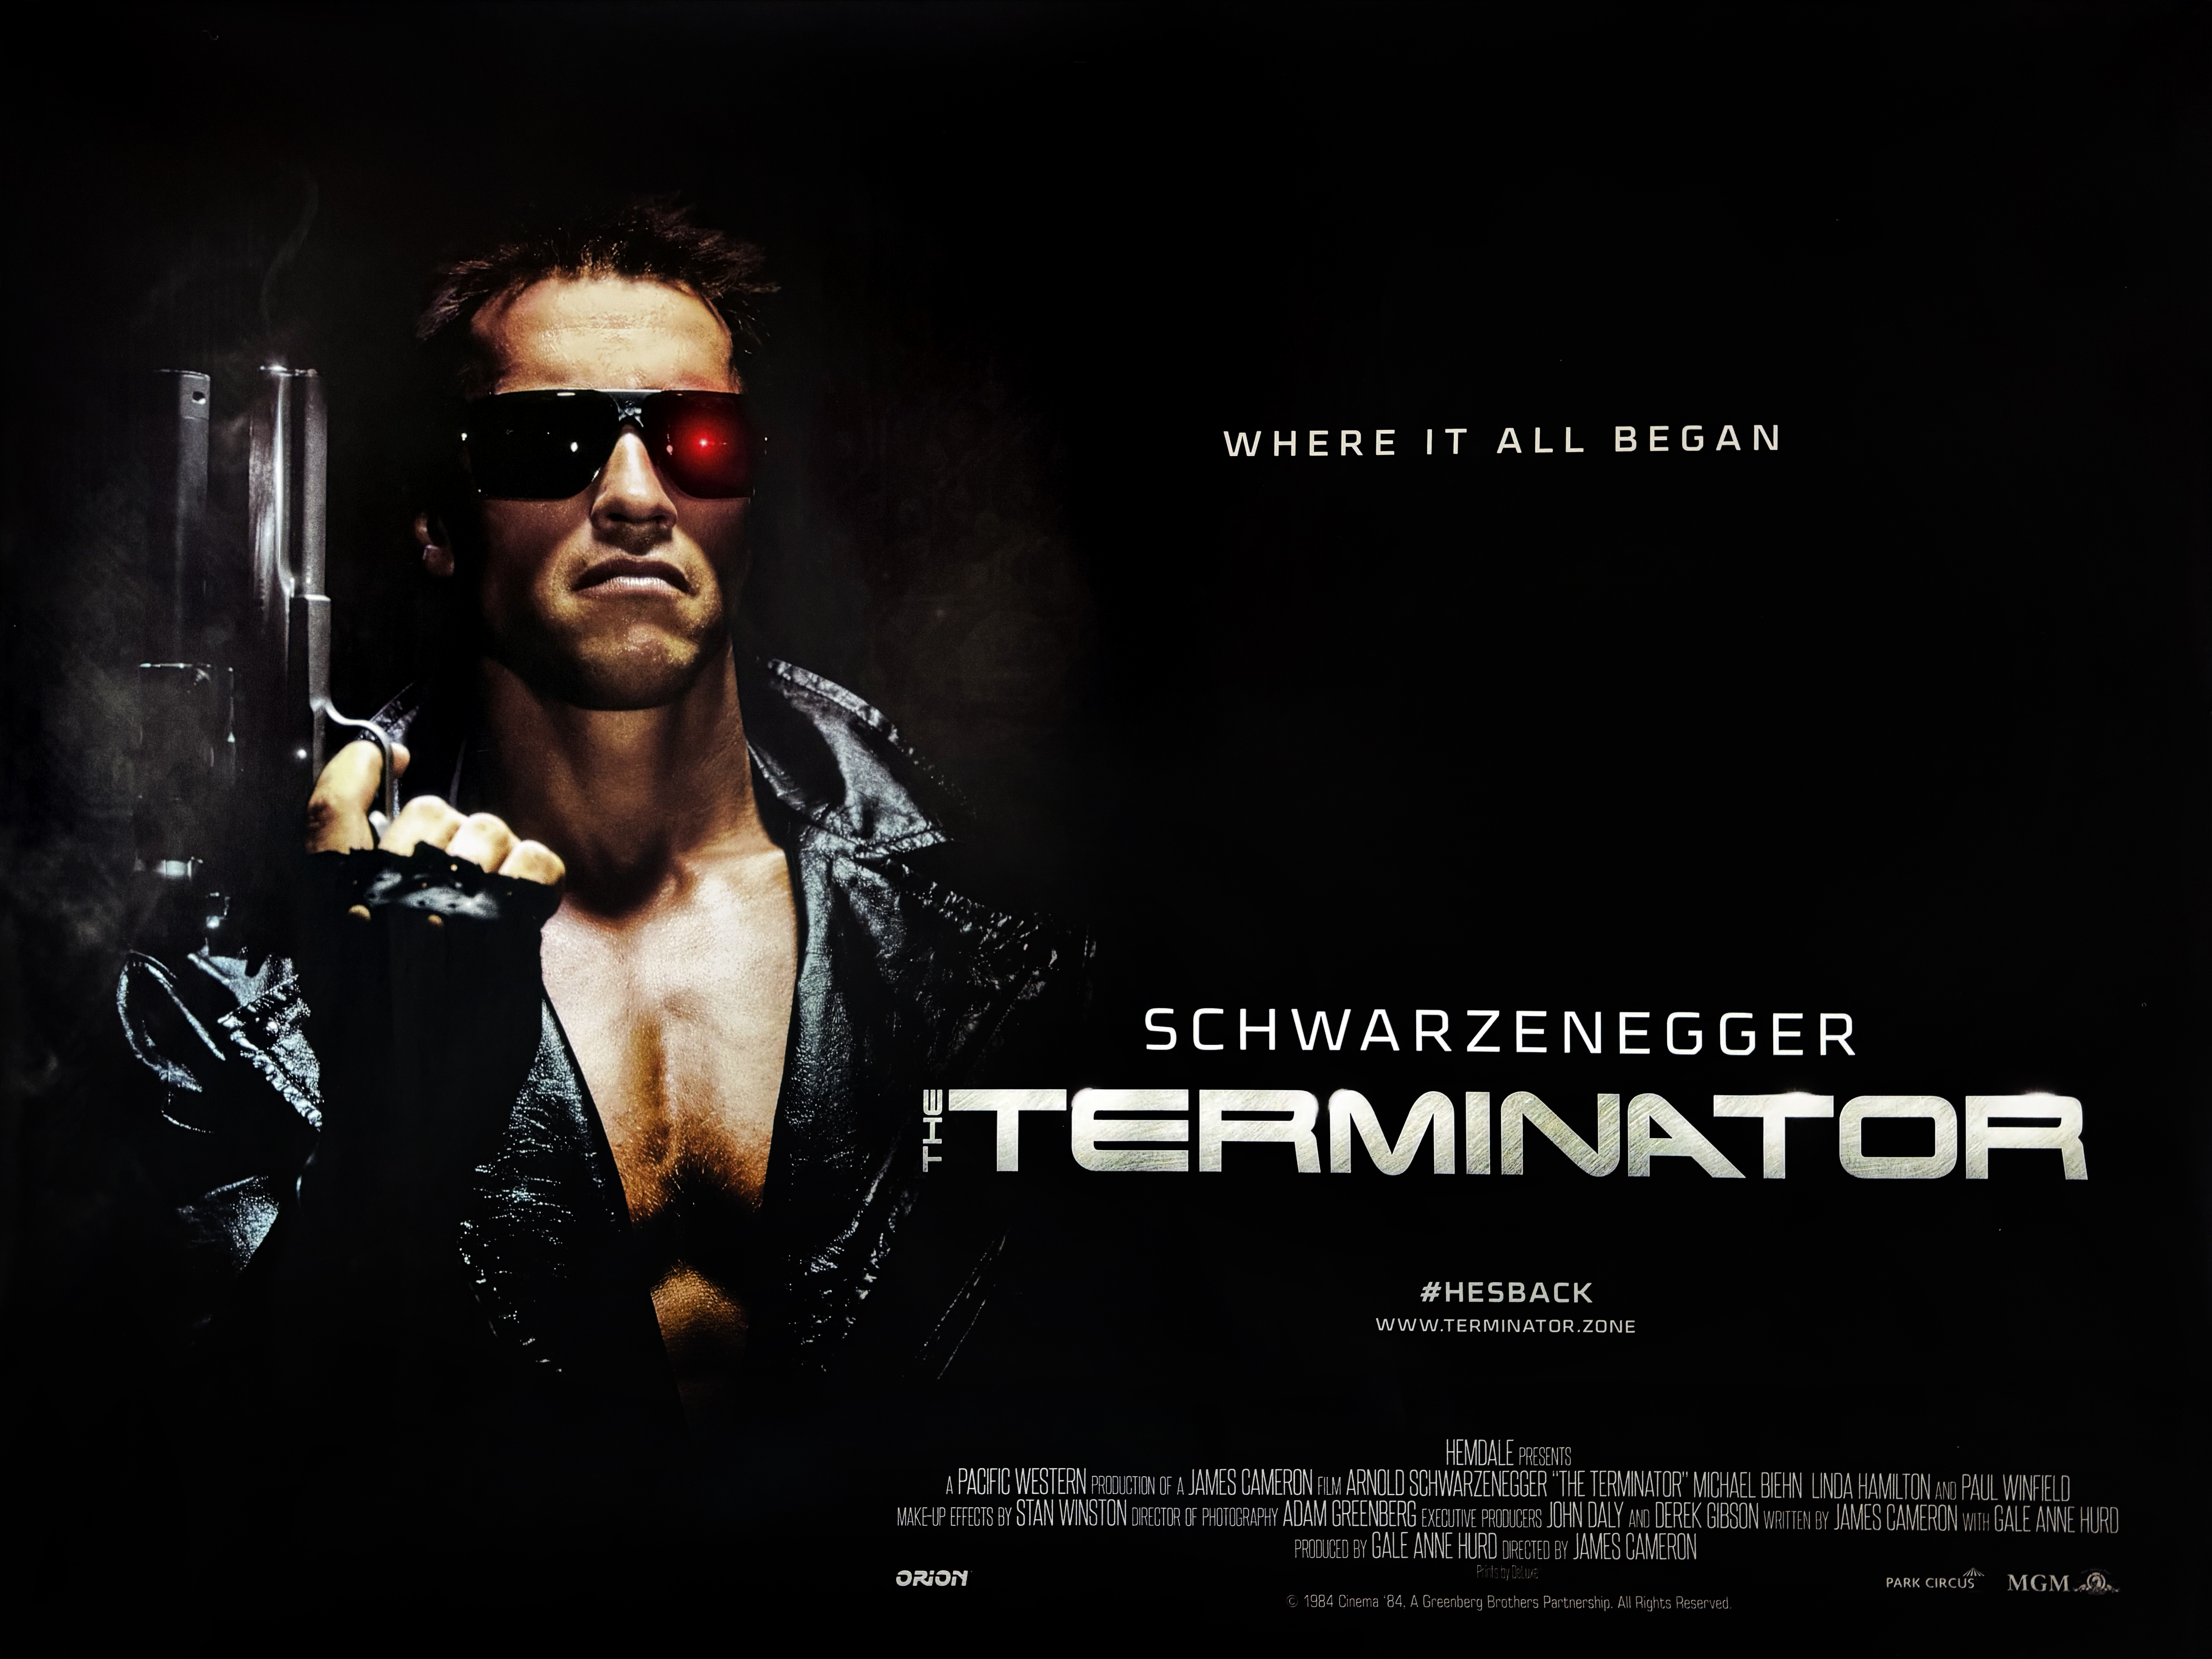 The Terminator movie quad poster